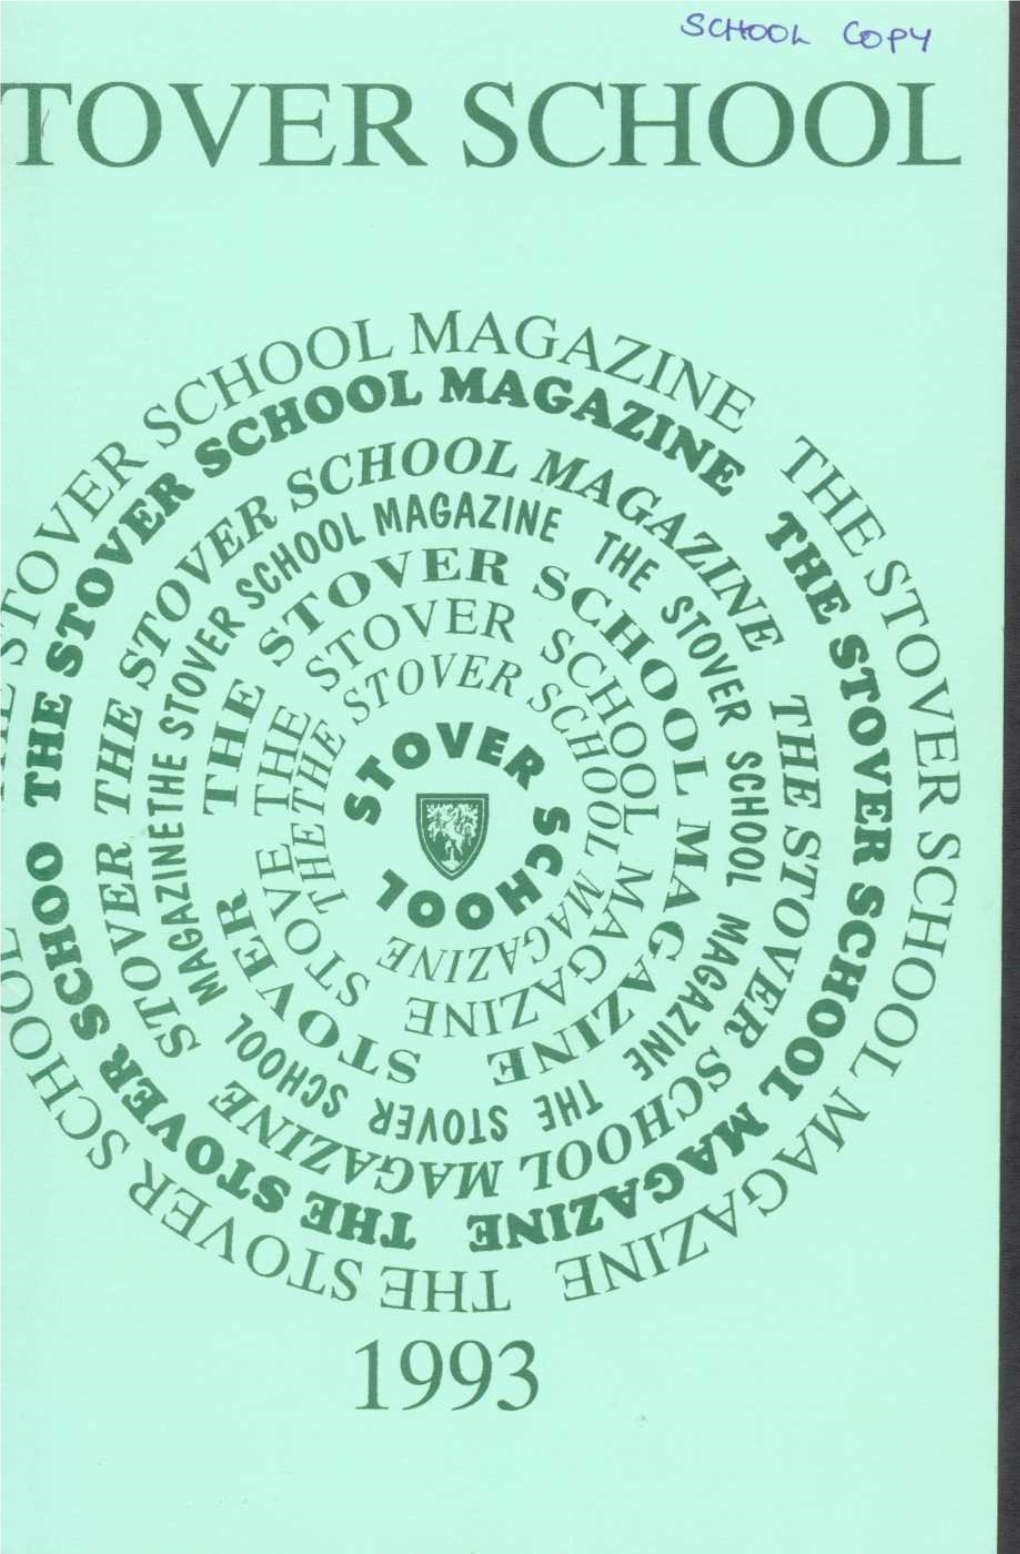 Stover School Magazine 1993